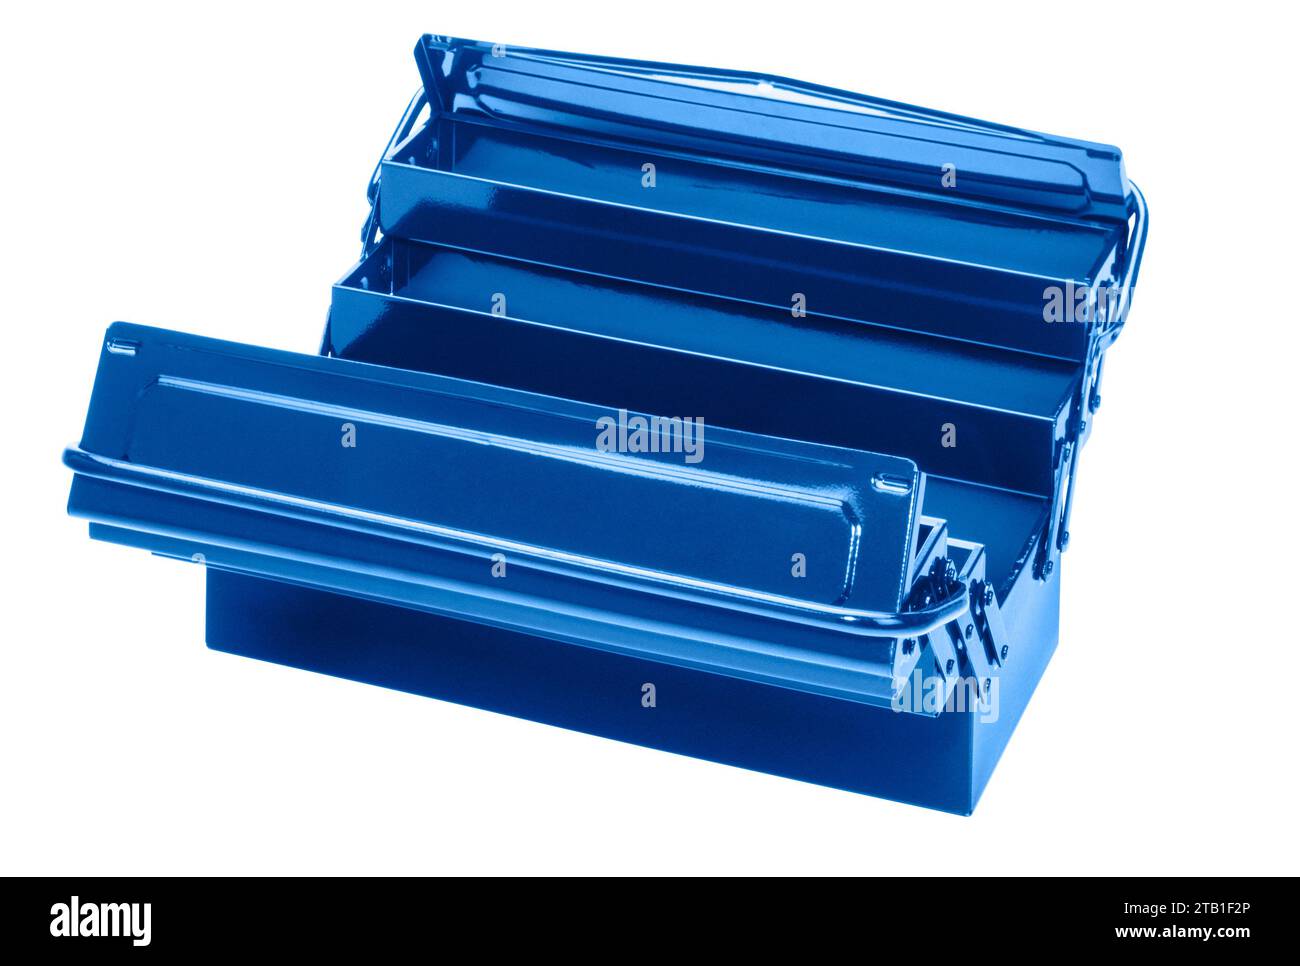 Boîte à outils métallique bleue escamotable isolée dans le dos blanc Banque D'Images